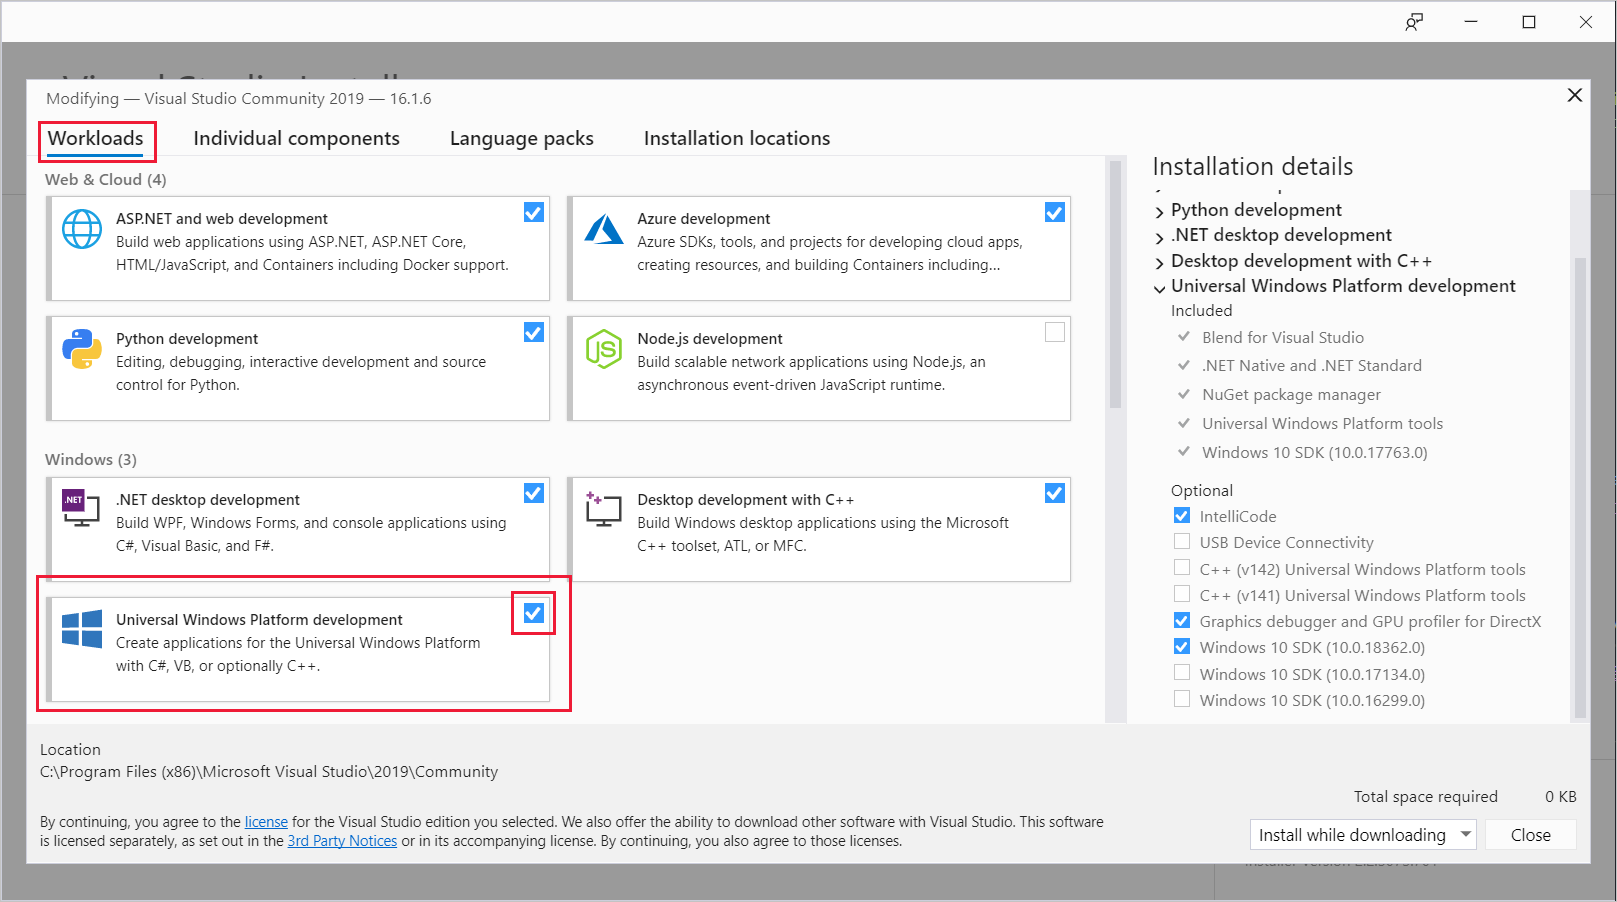 显示“修改”对话框的“工作负载”选项卡的屏幕截图，其中突出显示了“通用 Windows 平台开发”的工作负载。